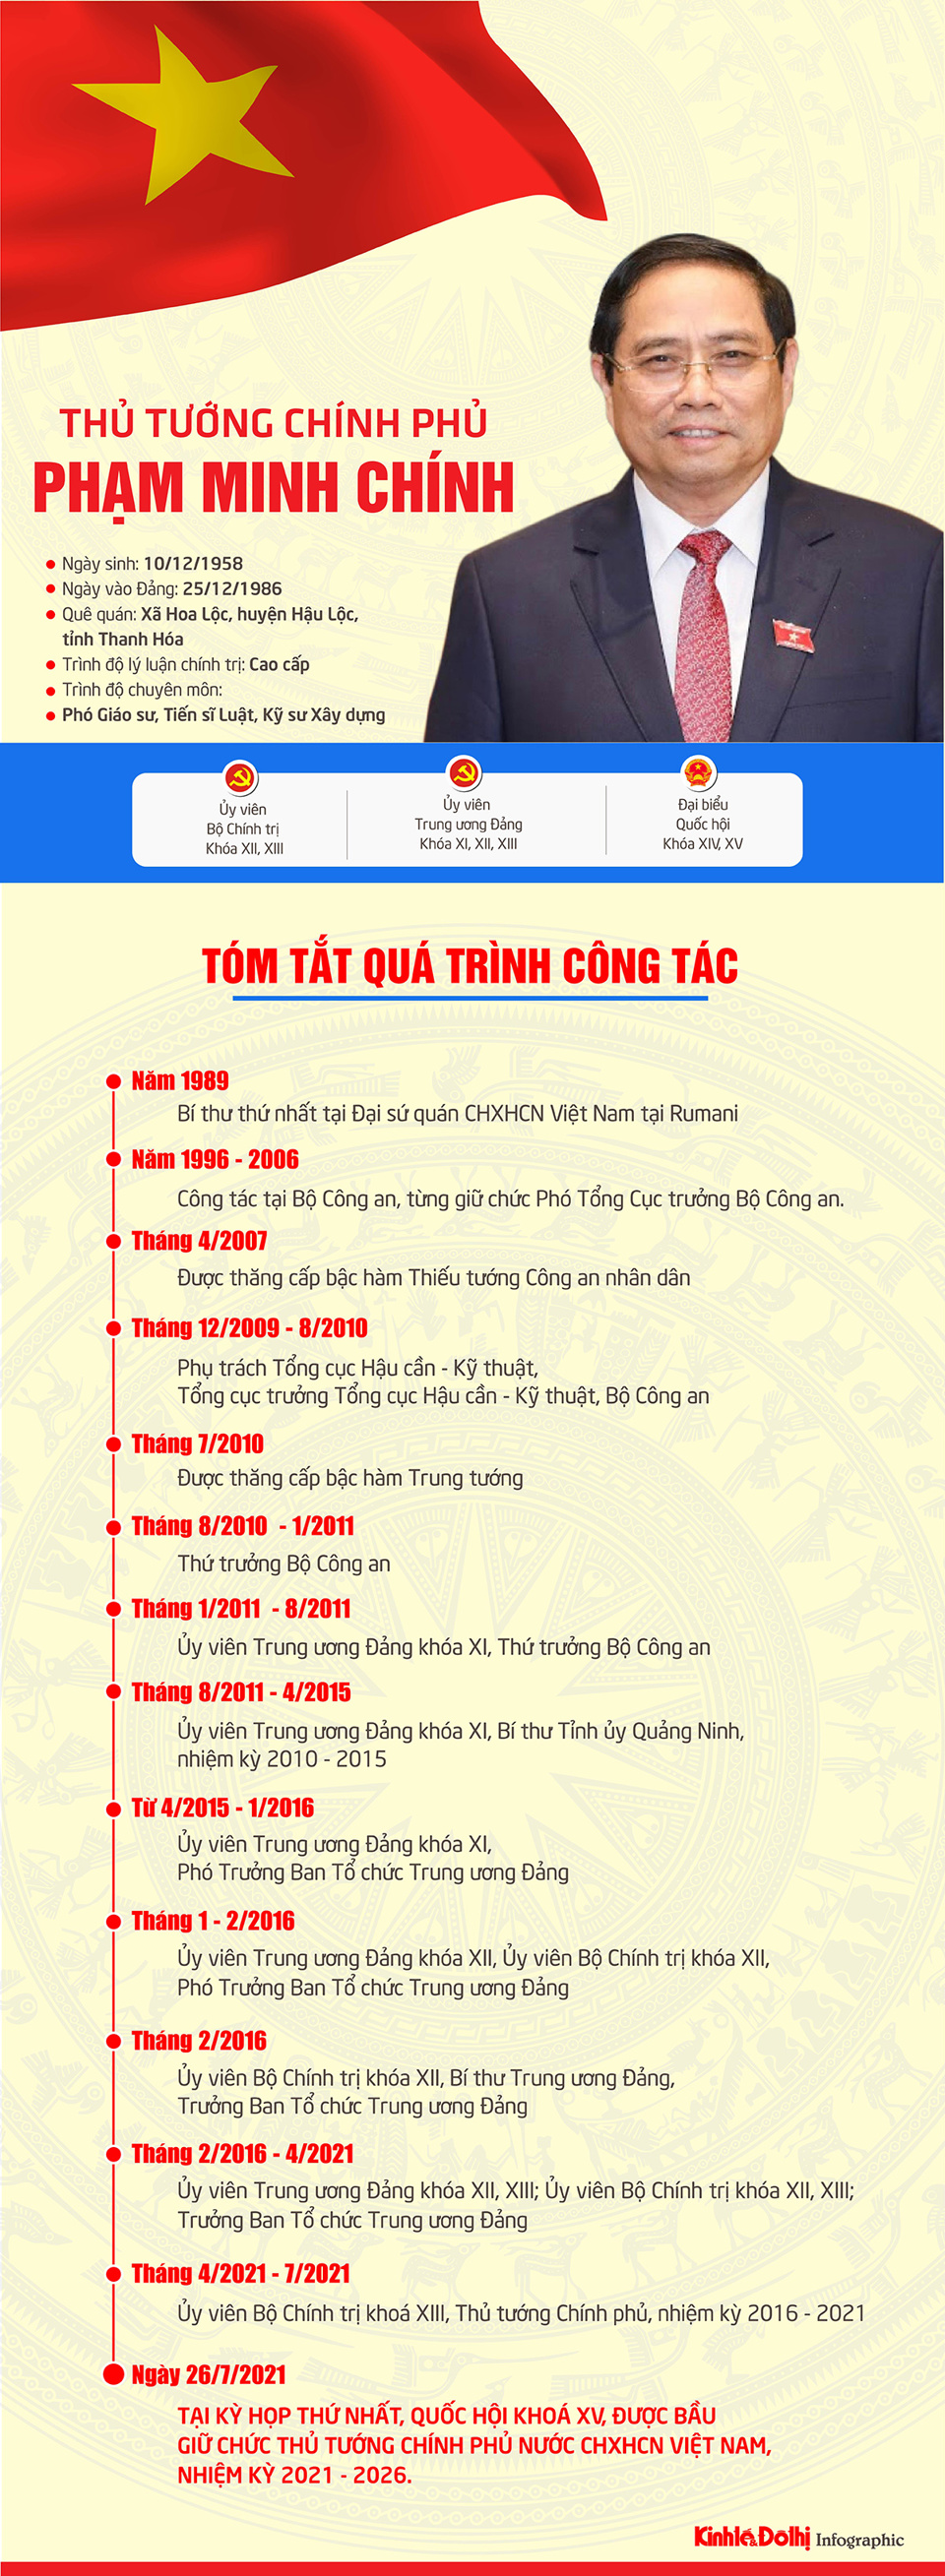 [Infographic] Chân dung Thủ tướng Chính phủ khóa XV Phạm Minh Chính - Ảnh 1